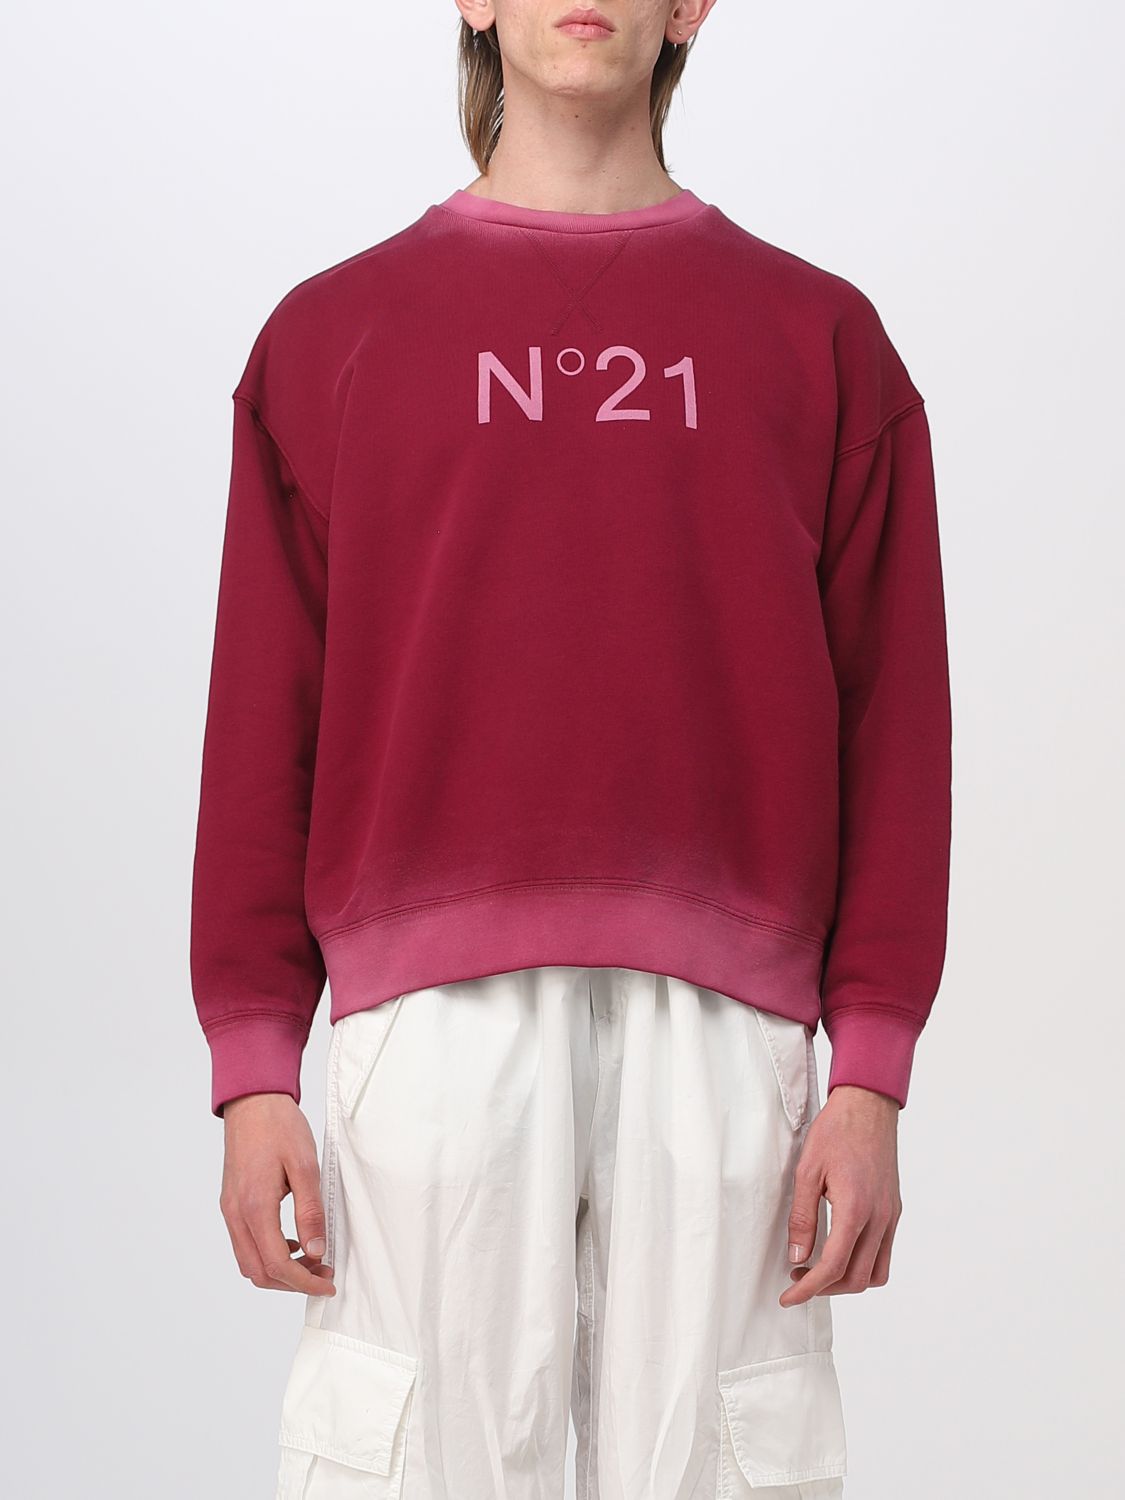 N°21 Sweatshirt N° 21 Men Color Black Cherry